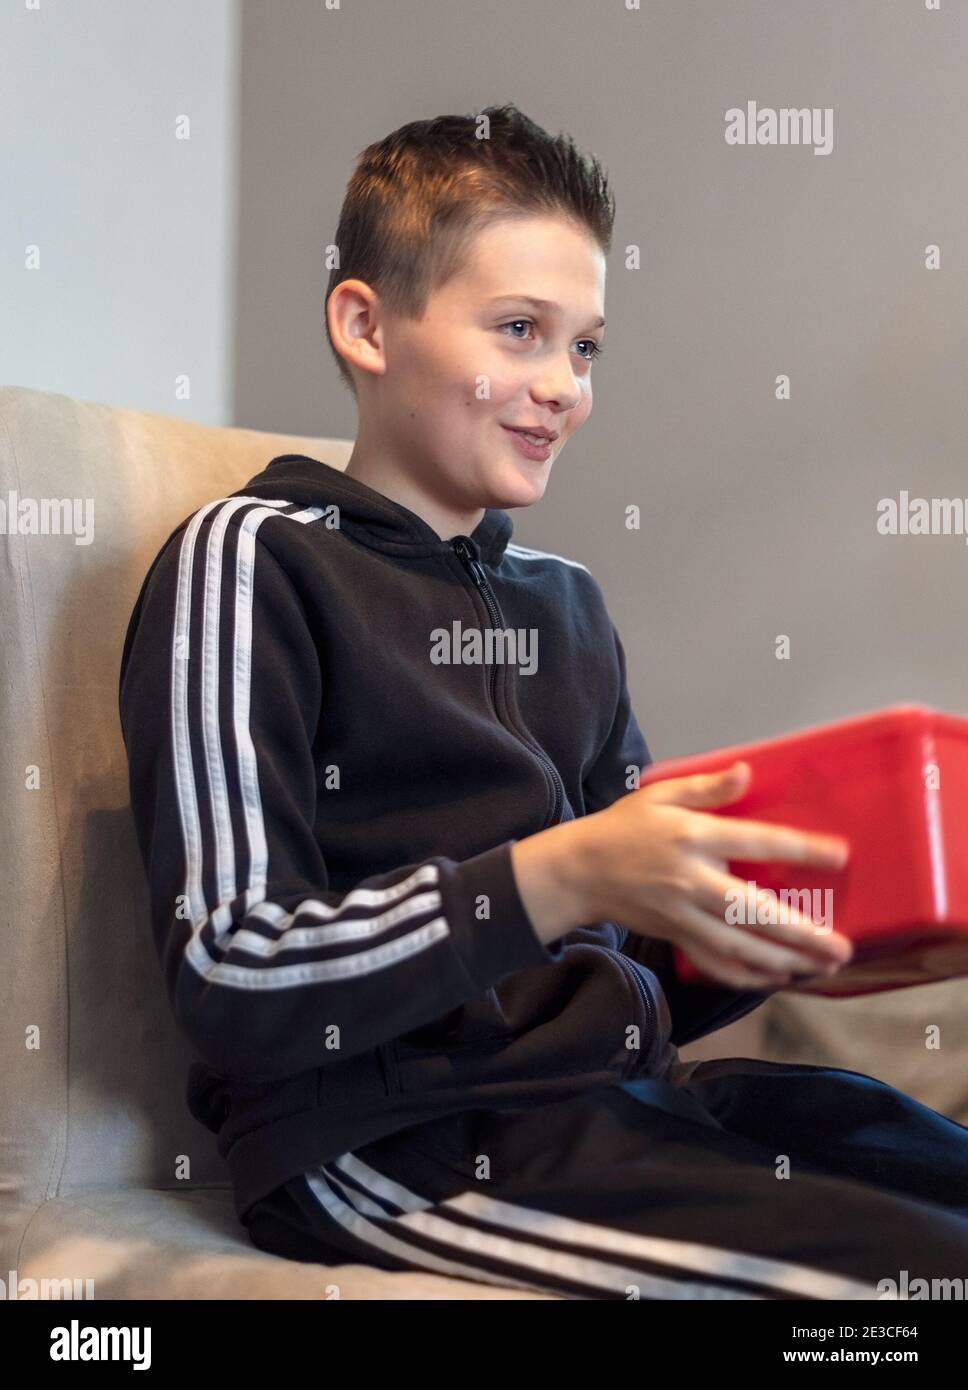 Bel ragazzo di 13 anni sorridente felice che riceve un presente avvolto Foto Stock